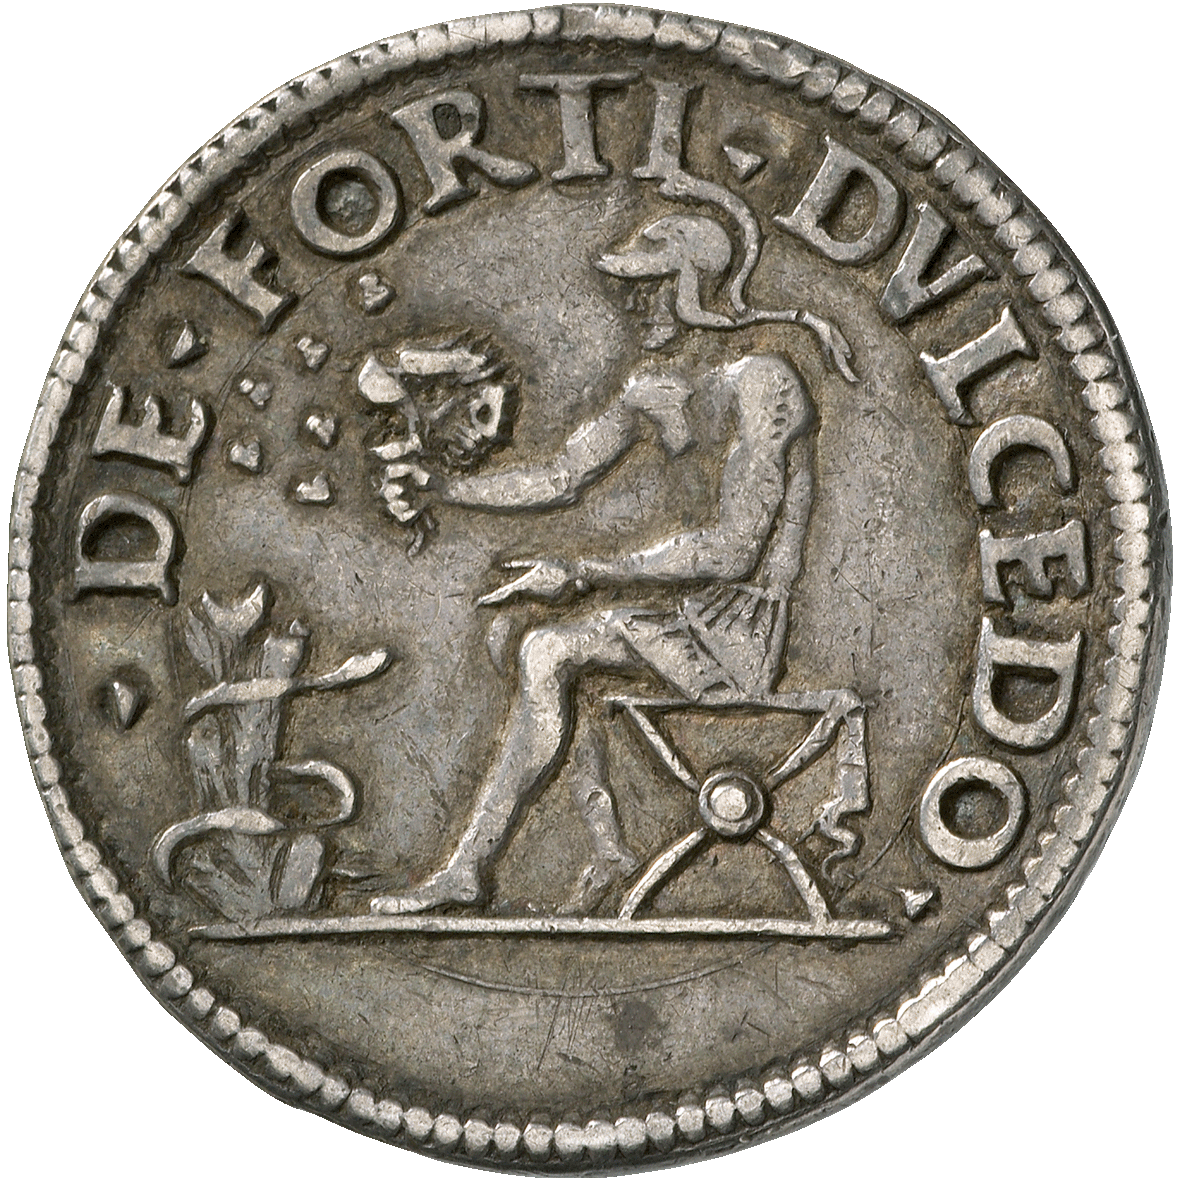 Herzogtum Ferrara, Alfonso I. d'Este, Testone (reverse)